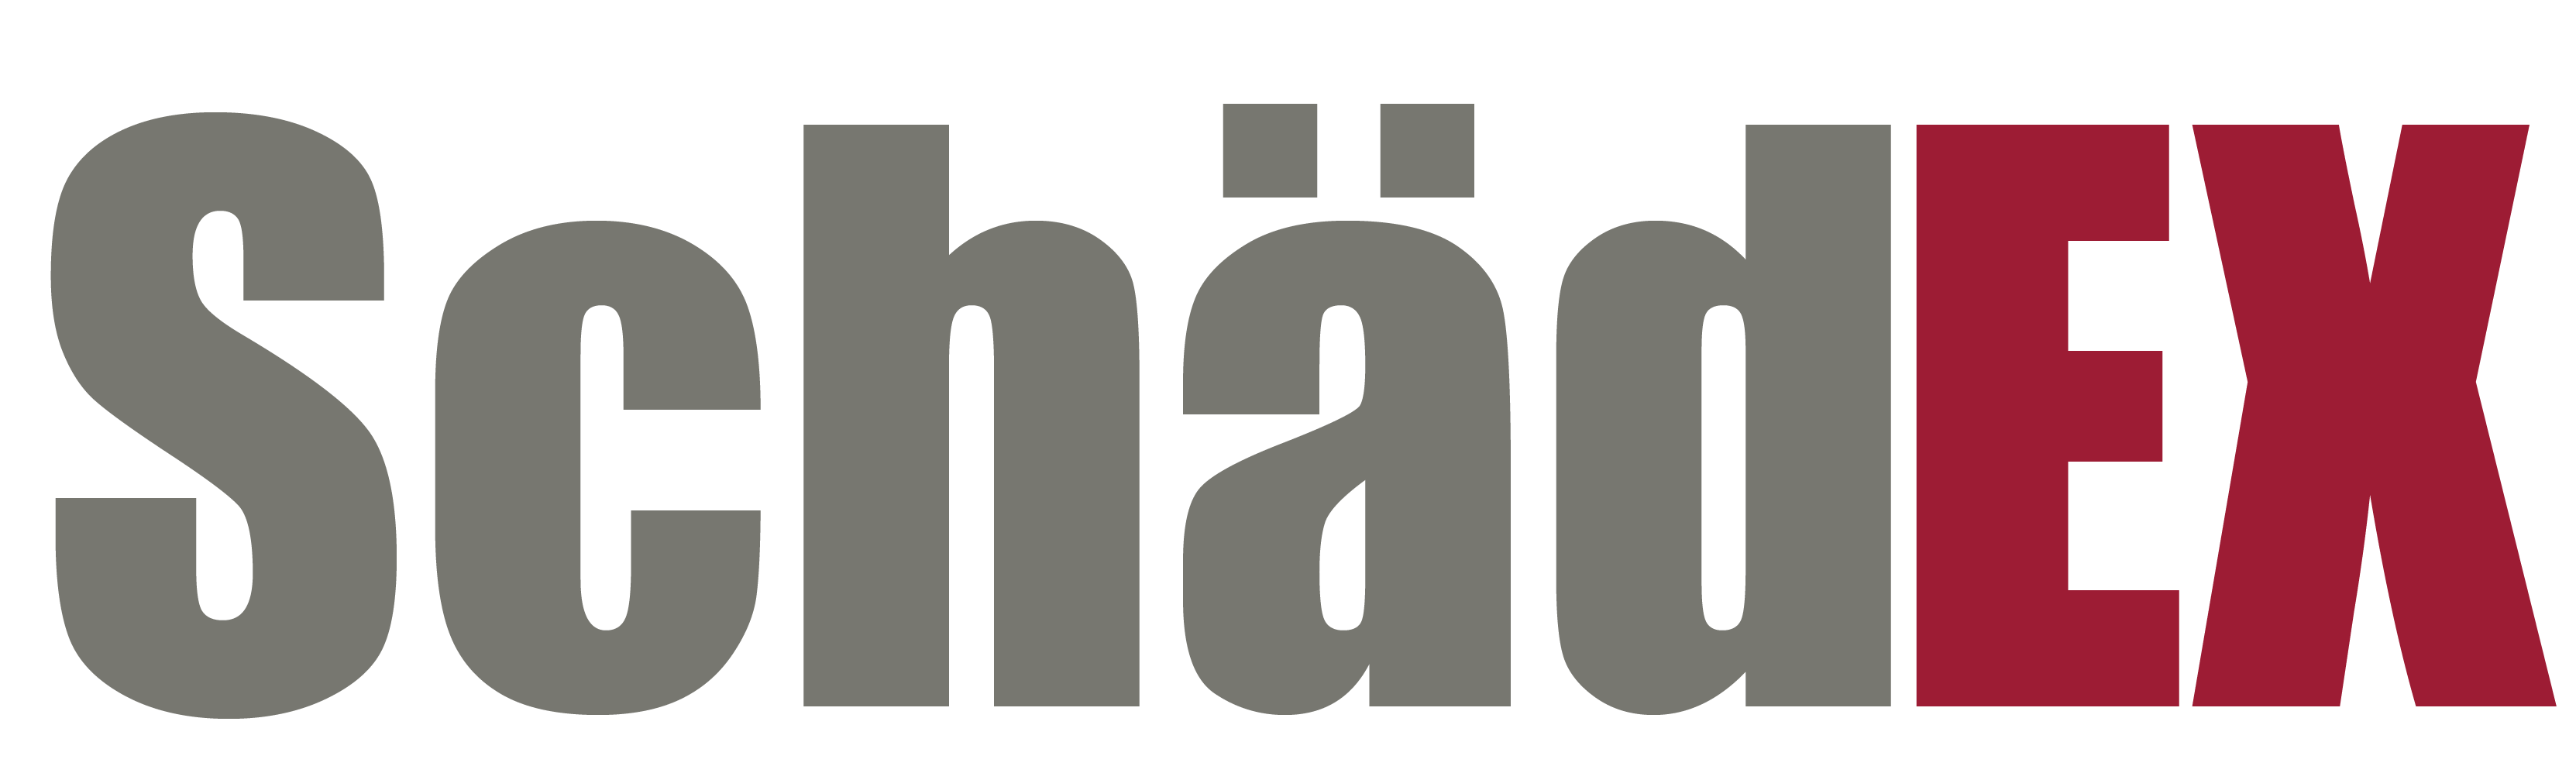 Logo SchädEX